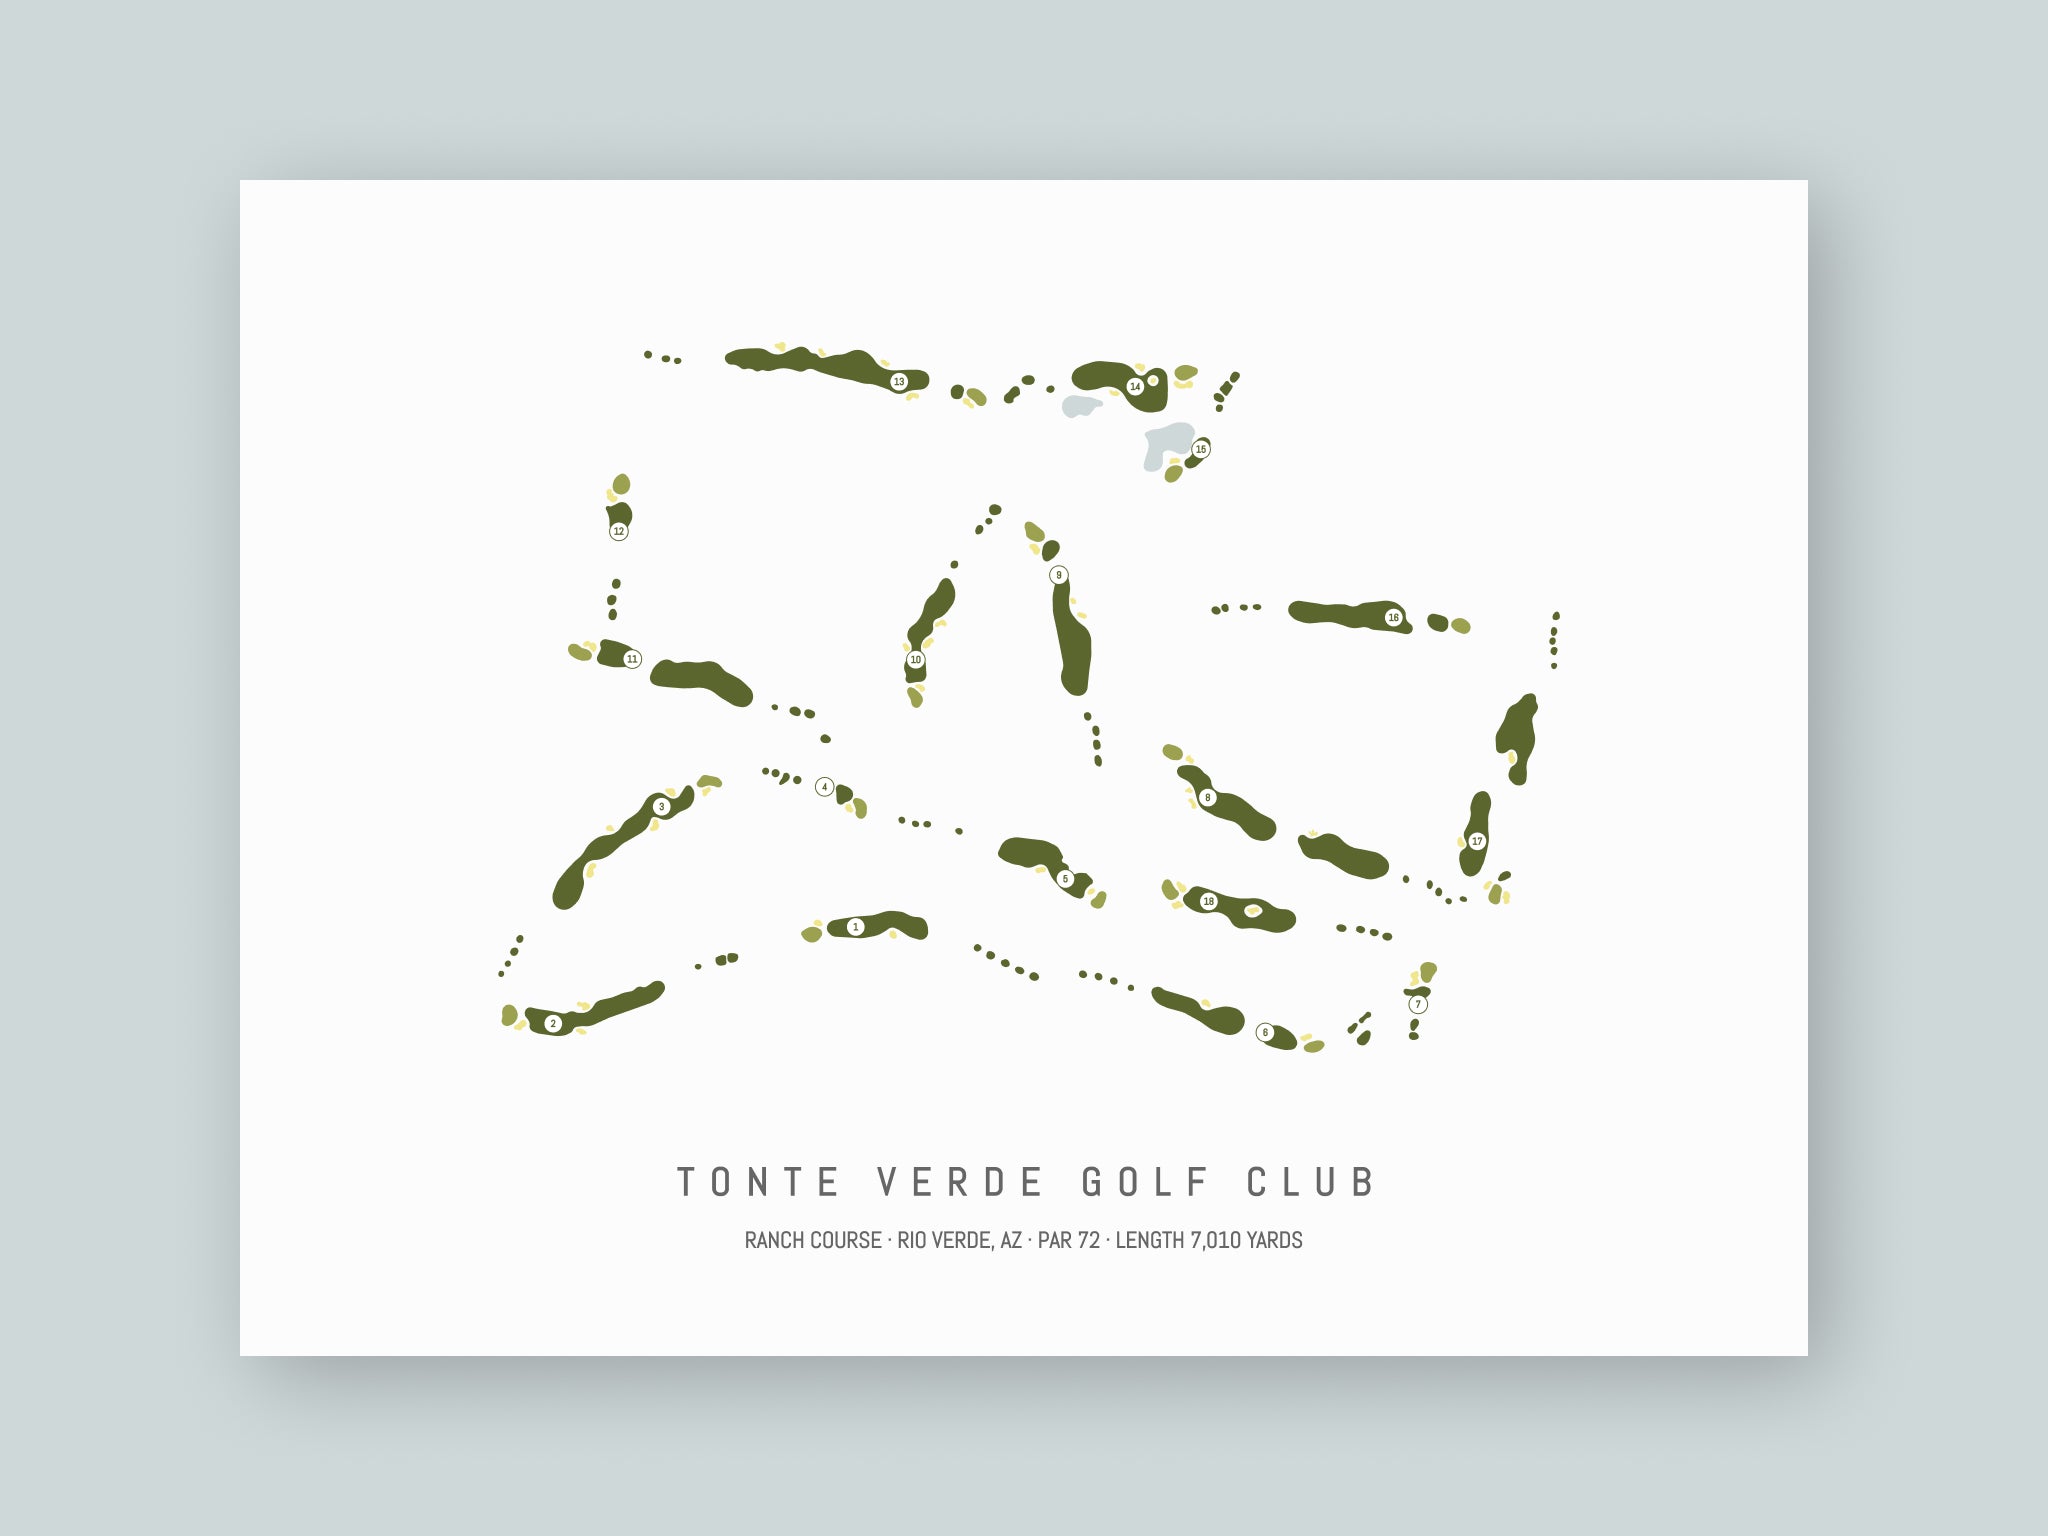 Tonto Verde Golf Club - Ranch Course